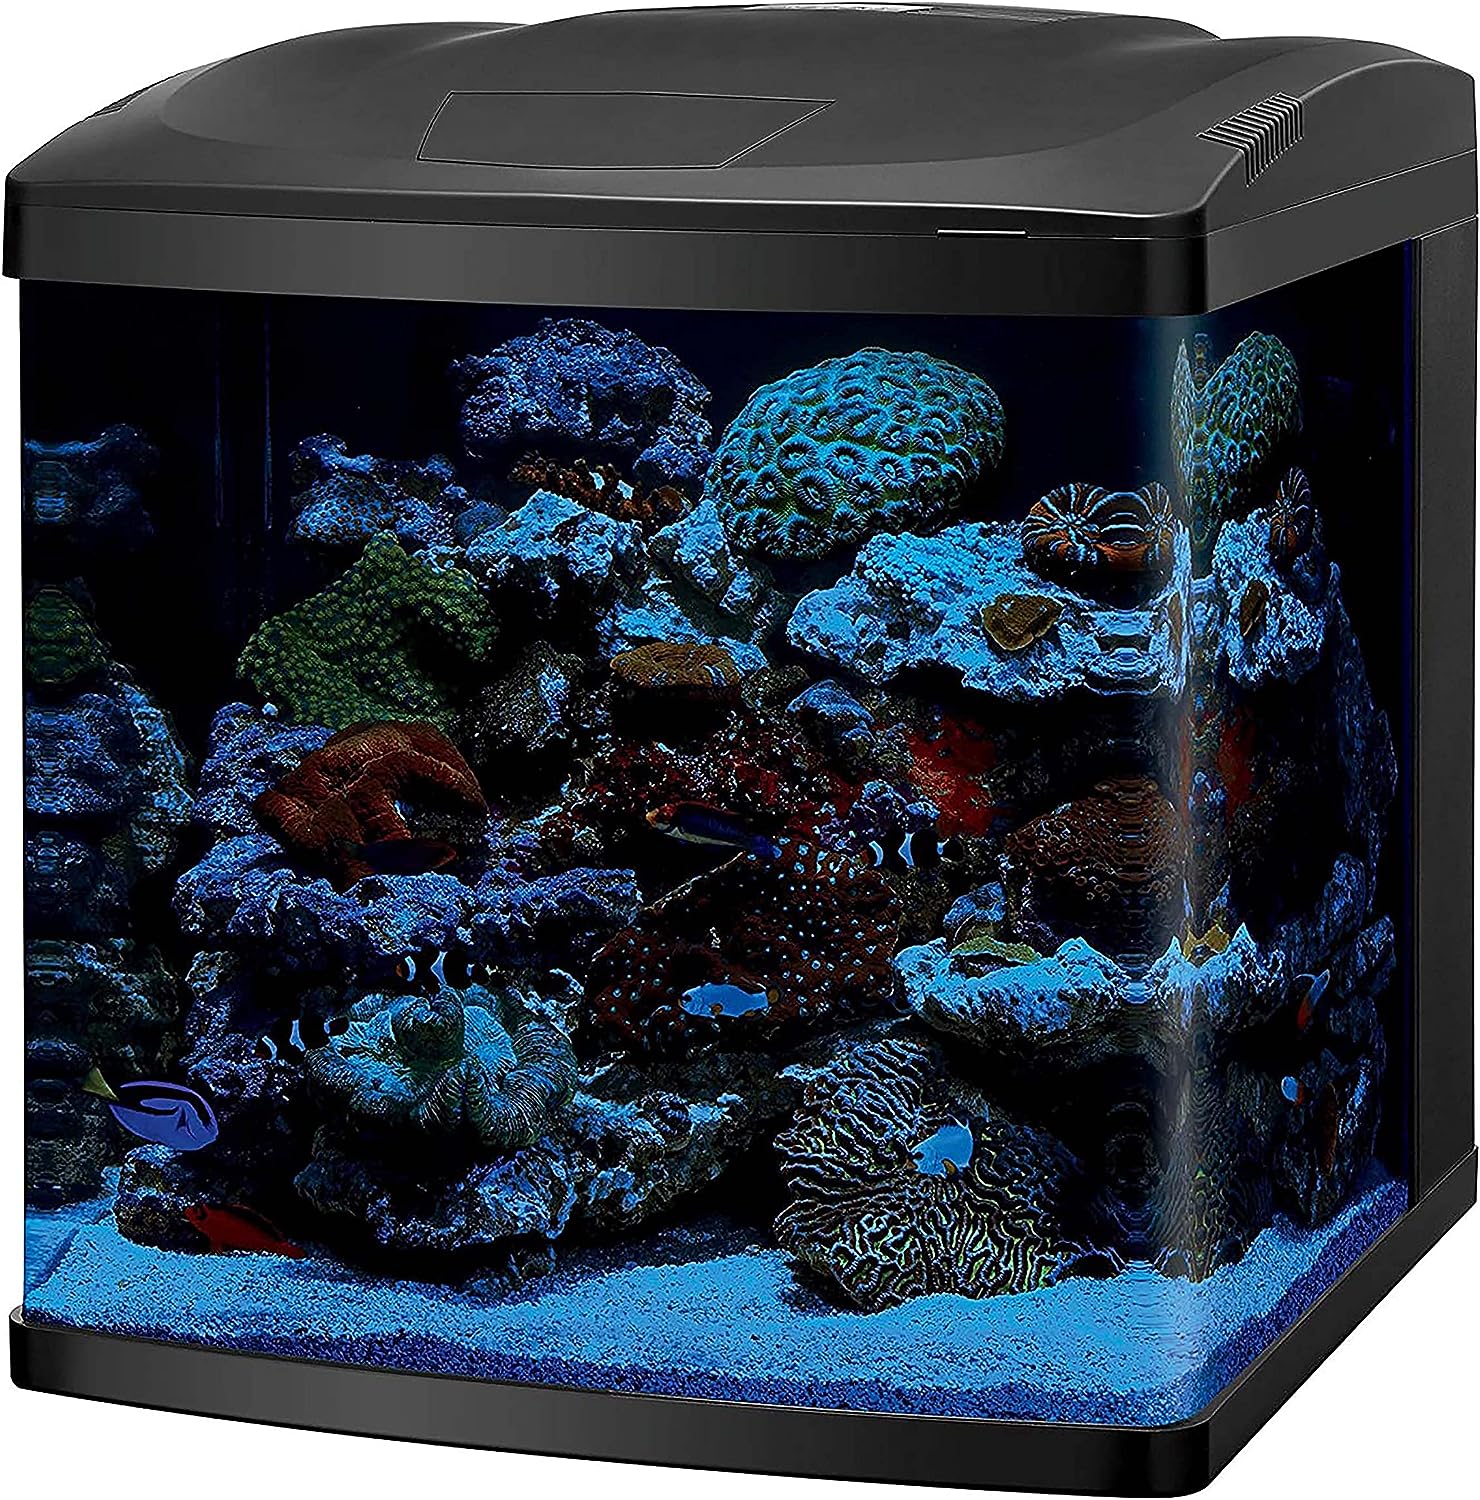 Coralife Biocube 16G Aquarium w/ LED's